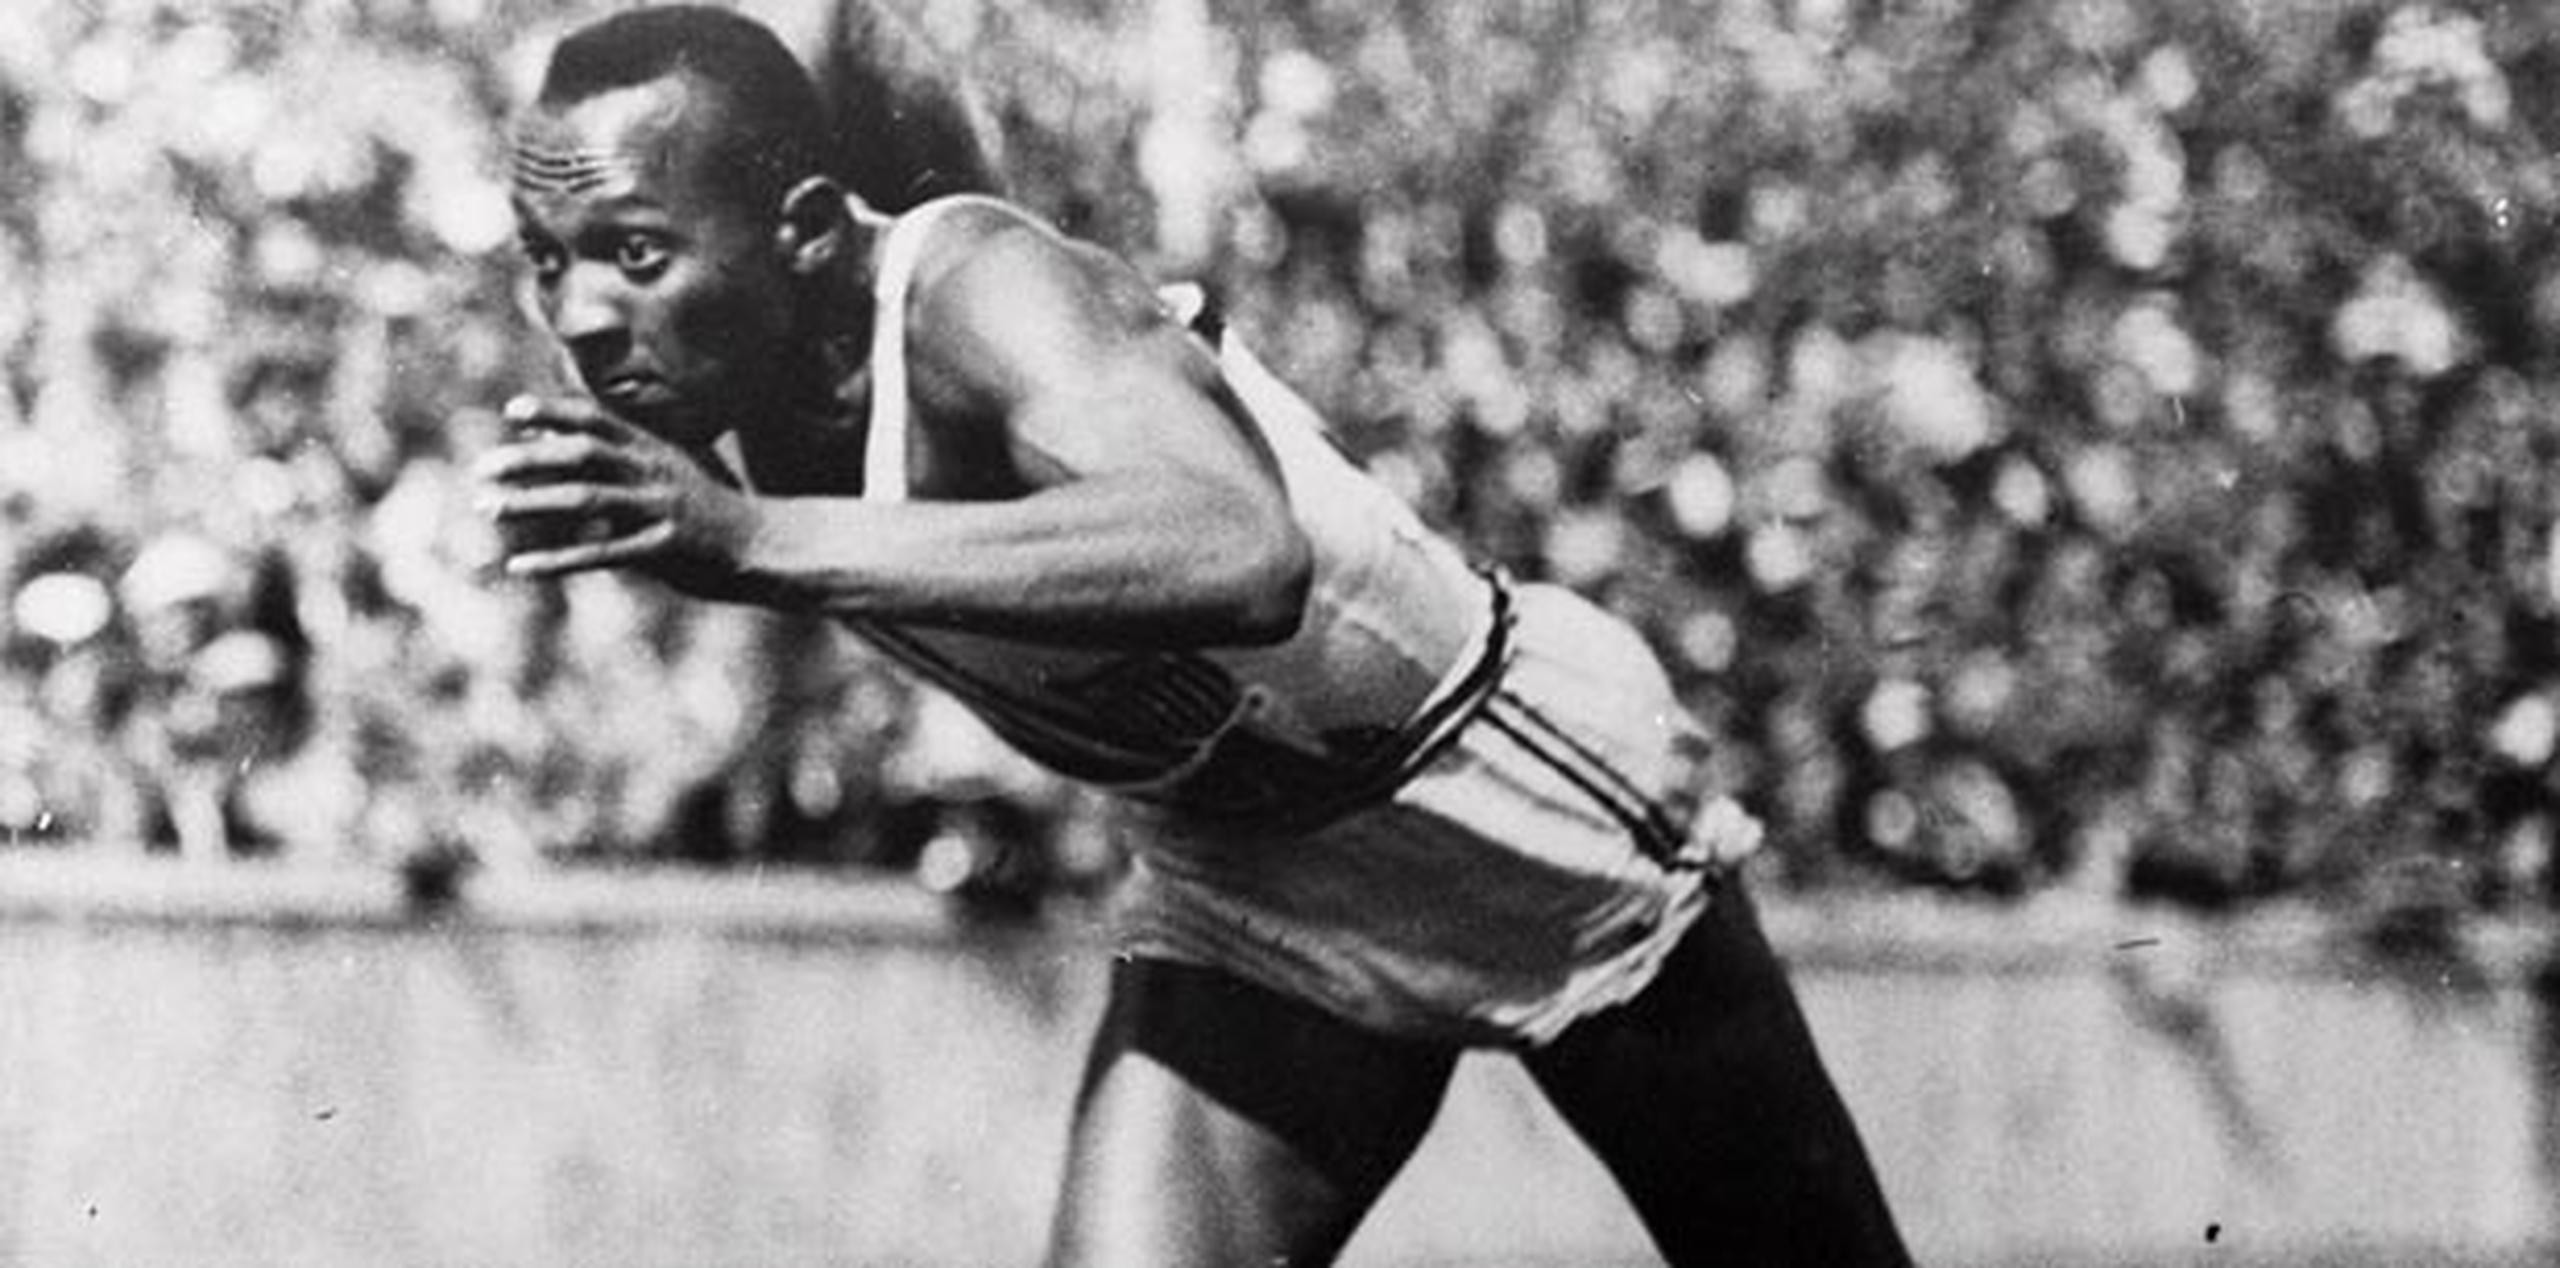 El atleta estadounidense Jesse Owens compitió en los Juegos Olímpicos de Berlín en 1936. (Archivo)